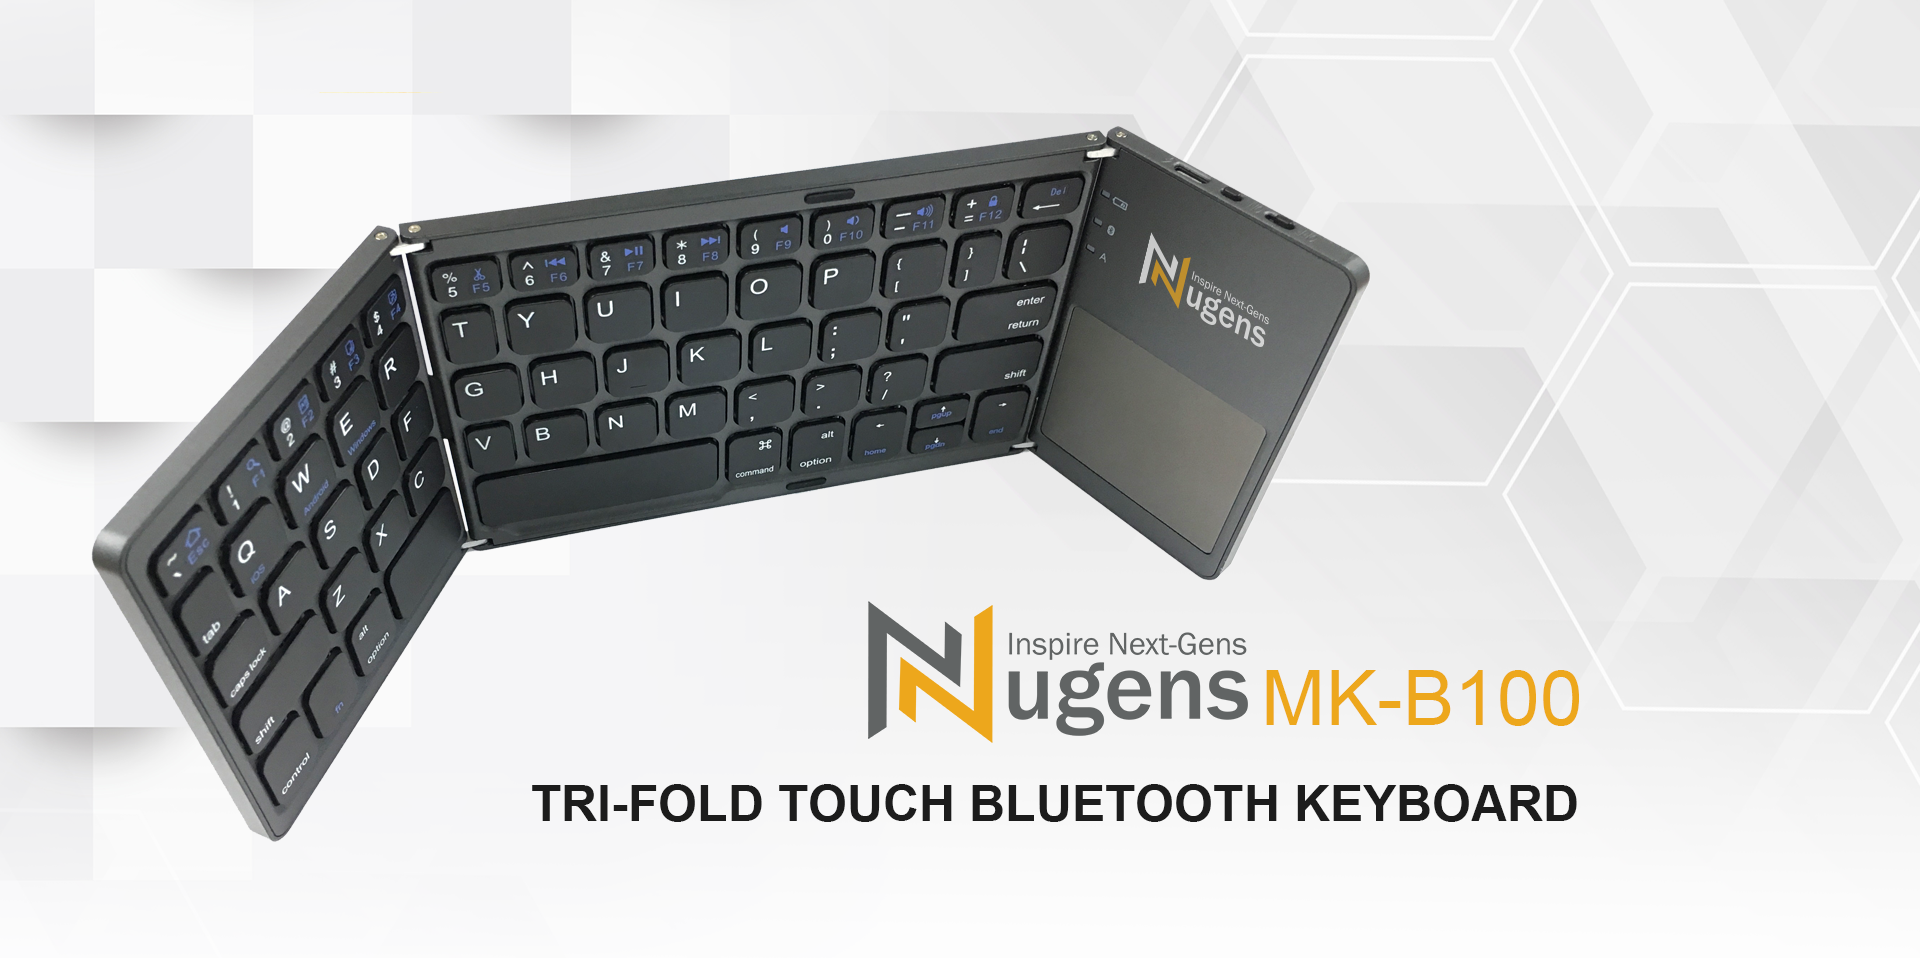 Tri-fold Touch Bluetooth Keyboard